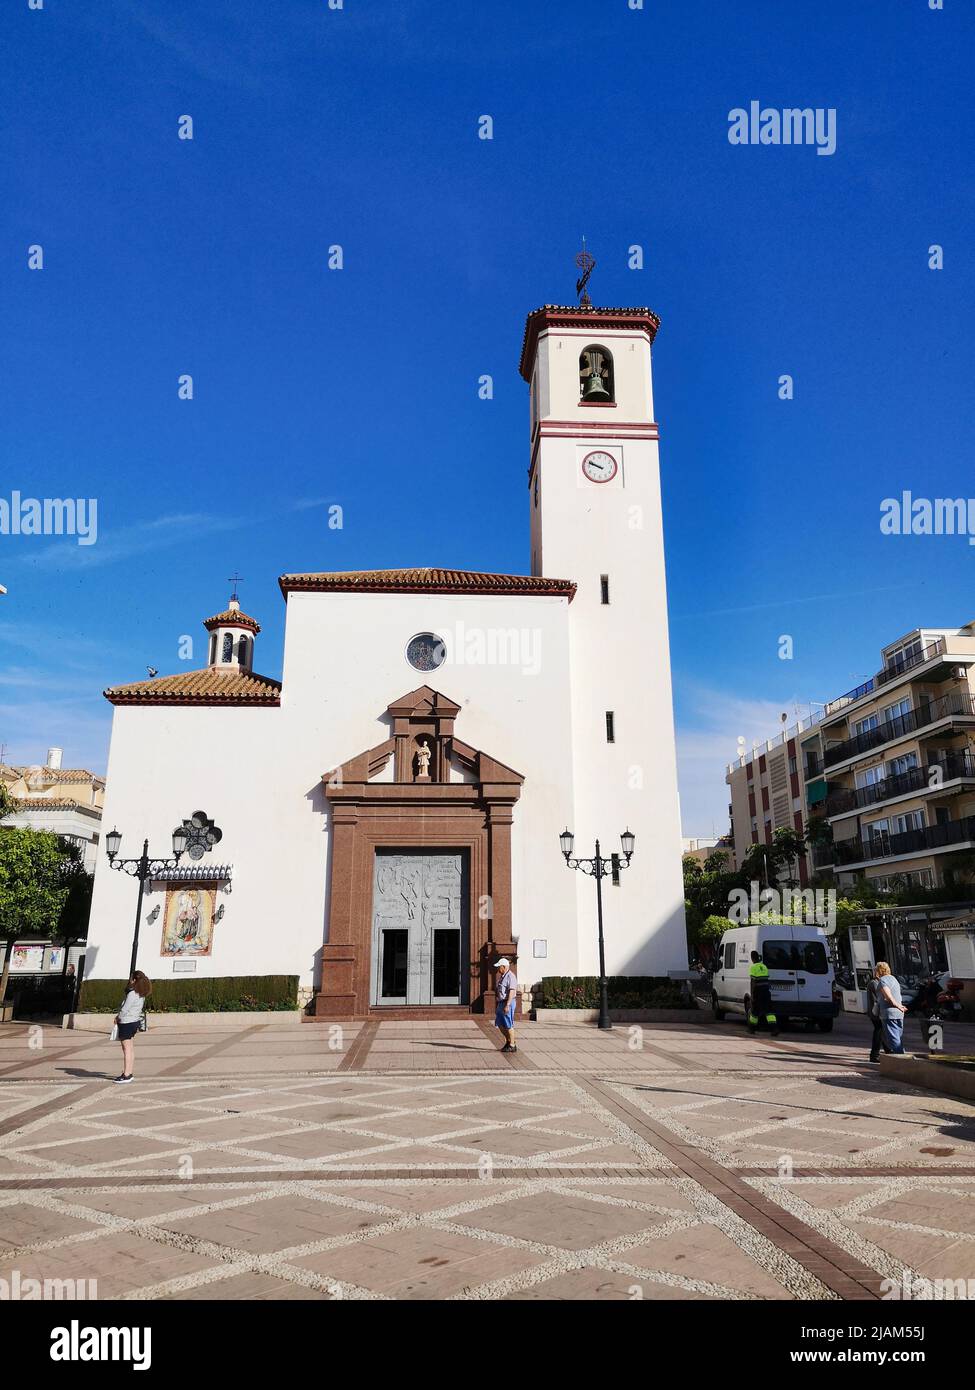 Church Nuestra Señora del Rosario at Plaza de la Constitucion. Fuengirola, Malaga province, Spain. Stock Photo